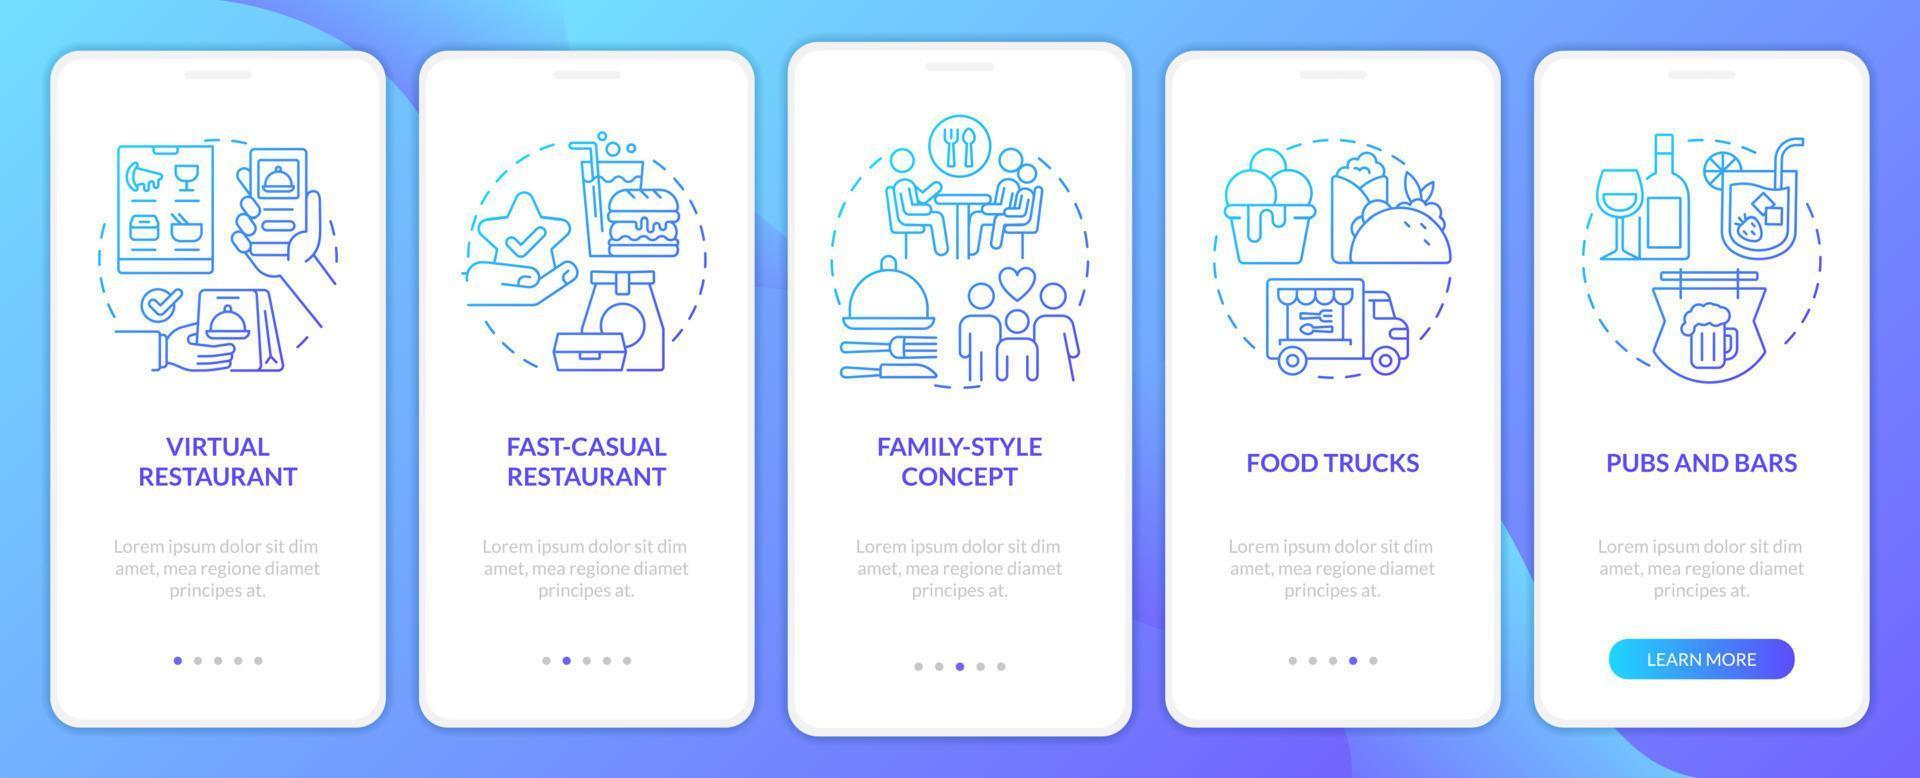 winstgevend restaurant bedrijf blauw helling onboarding mobiel app scherm. walkthrough 5 stappen grafisch instructies met lineair concepten. ui, ux, gui sjabloon vector